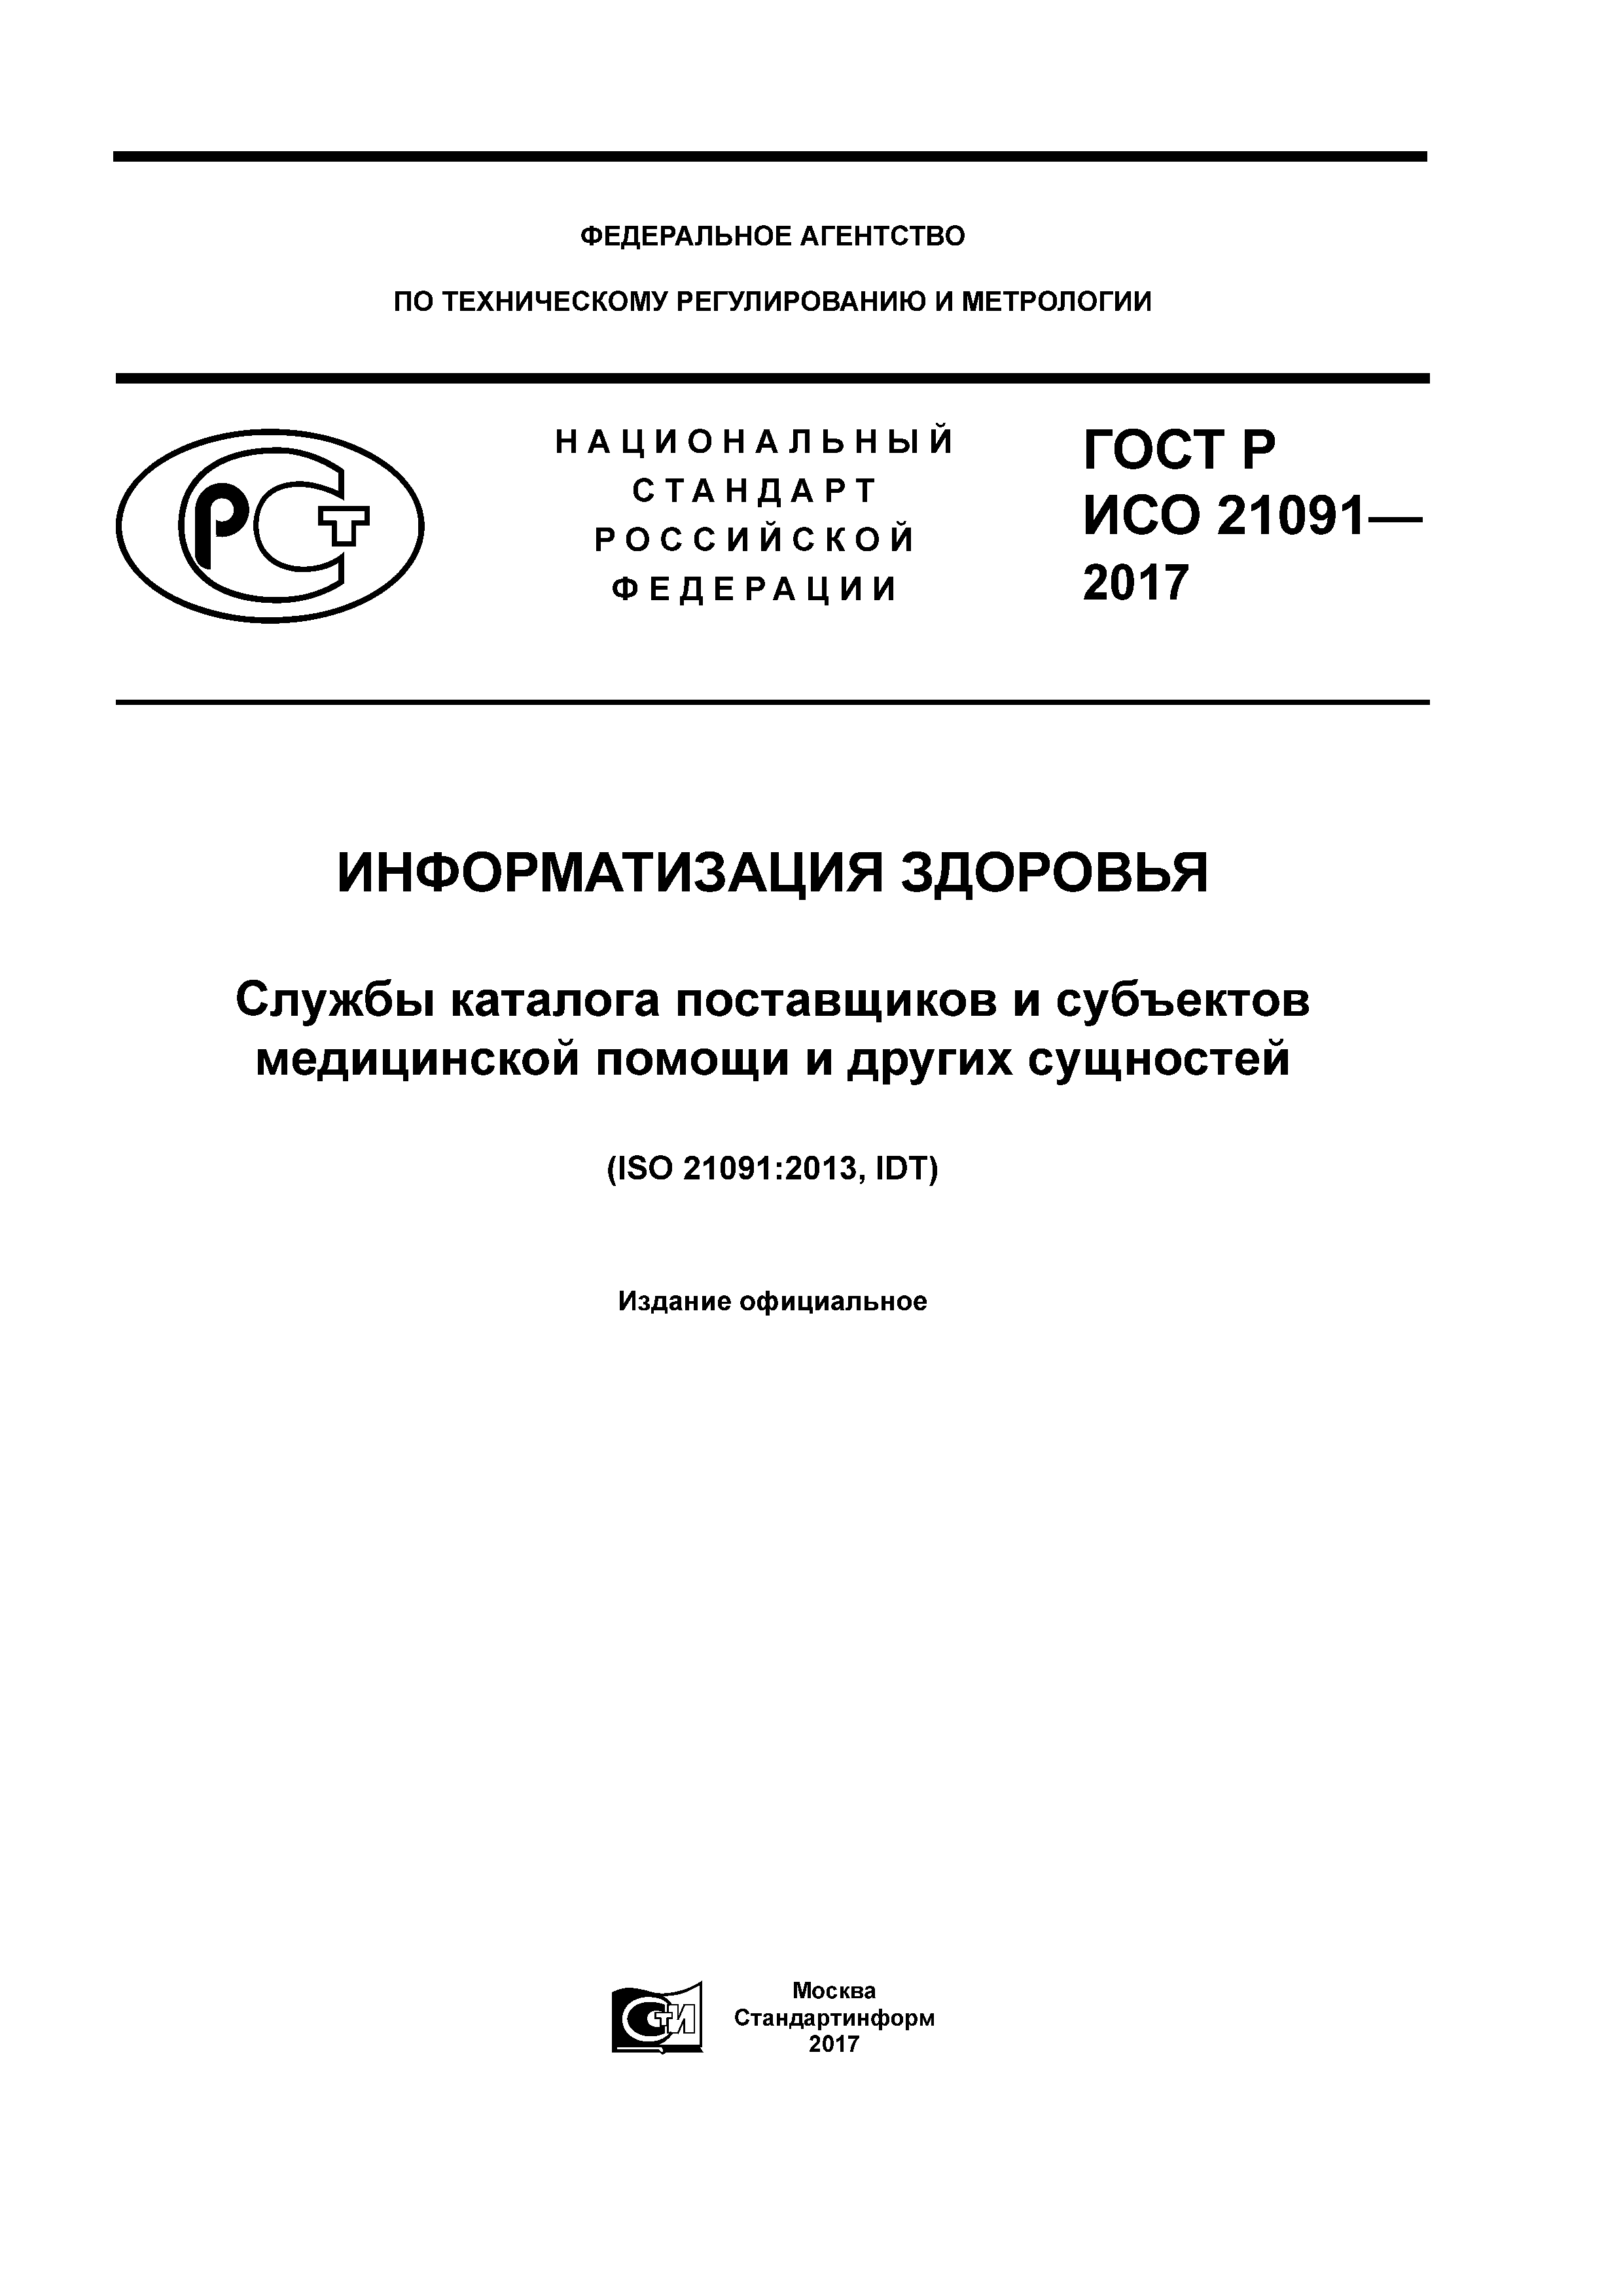 ГОСТ Р ИСО 21091-2017